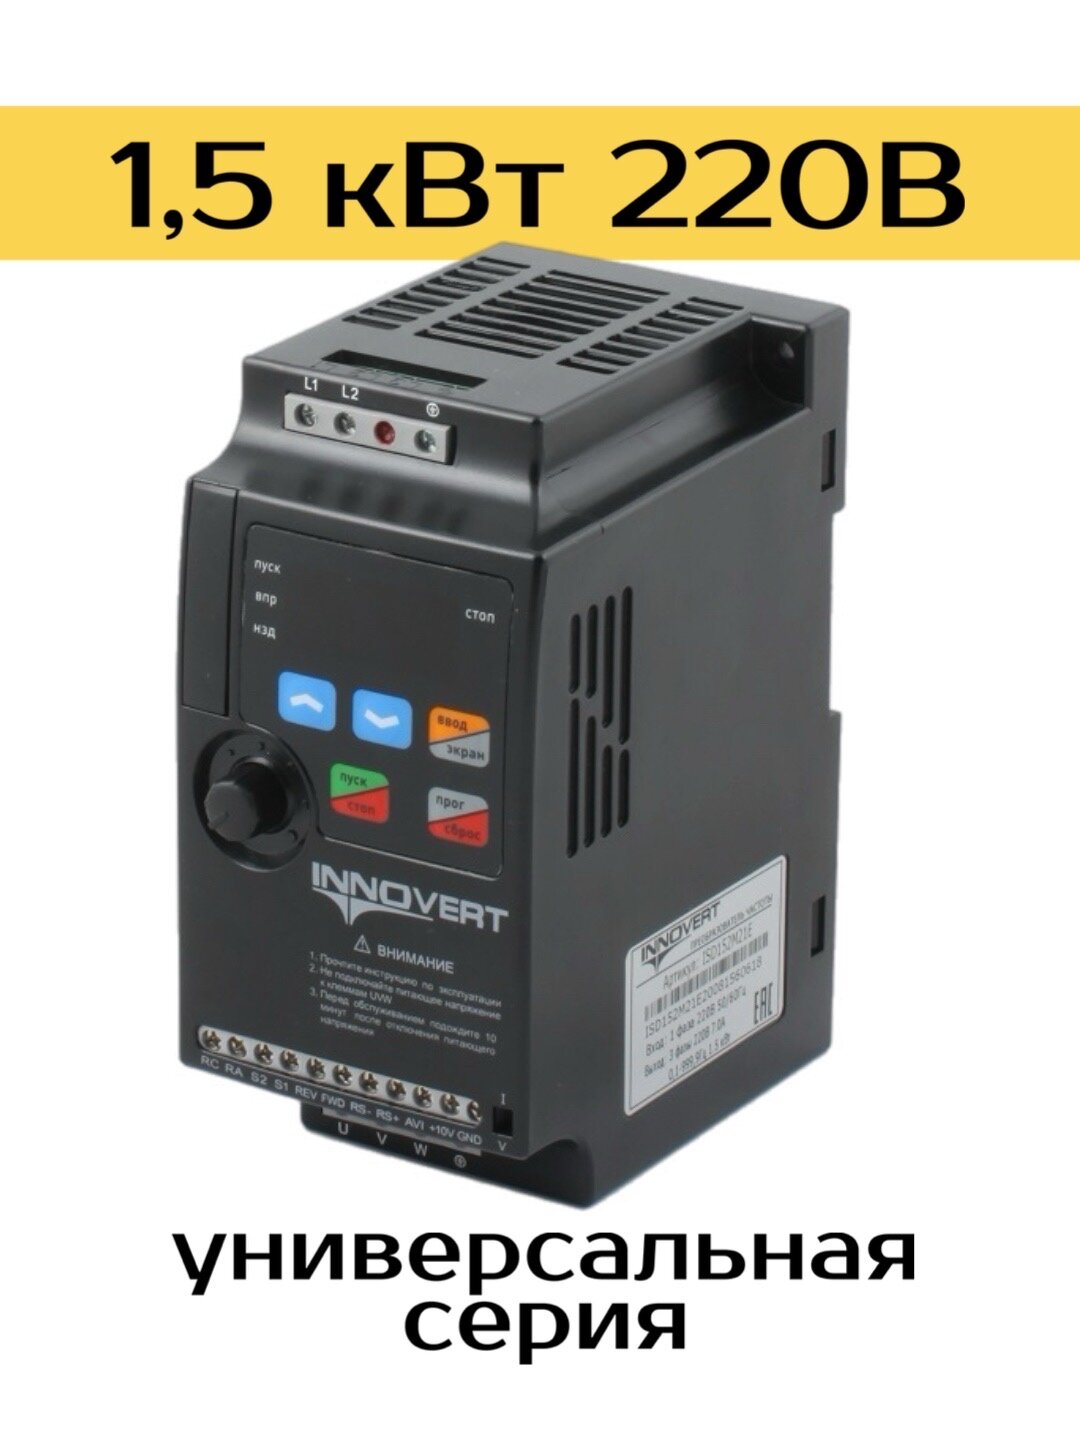 Частотный преобразователь INNOVERT ISD152M21E 1,5 квт 220В / Преобразователь частоты Инноверт